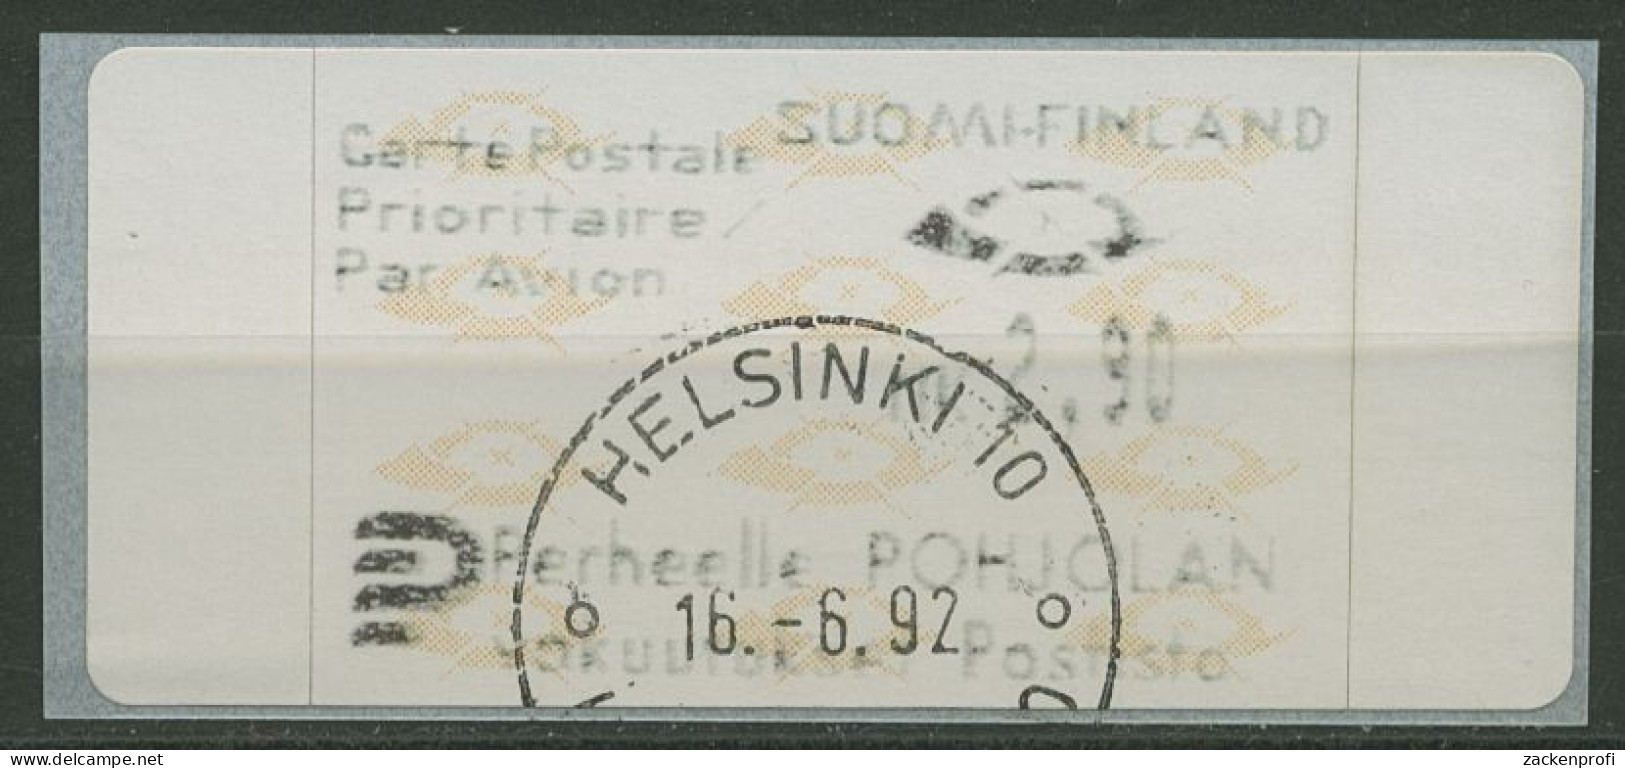 Finnland Automatenmarken 1992 Posthörner Einzelwert ATM 12.3 Z3 Gestempelt - Vignette [ATM]